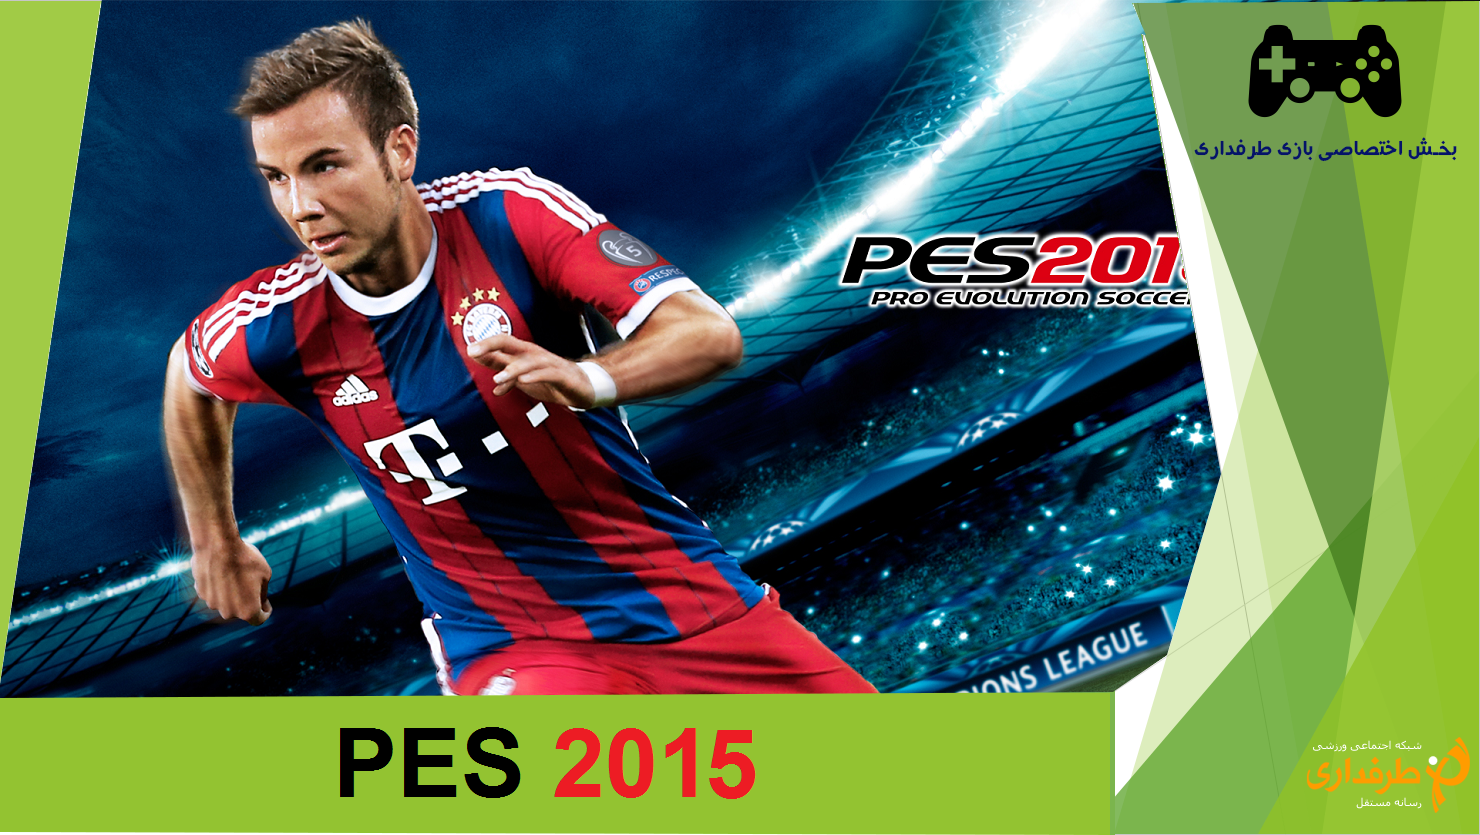 اخطار به کاربران بخش آنلاین بازی PES 2015؛ سرور های بازی به زودی از دسترس خارج خواهند شد